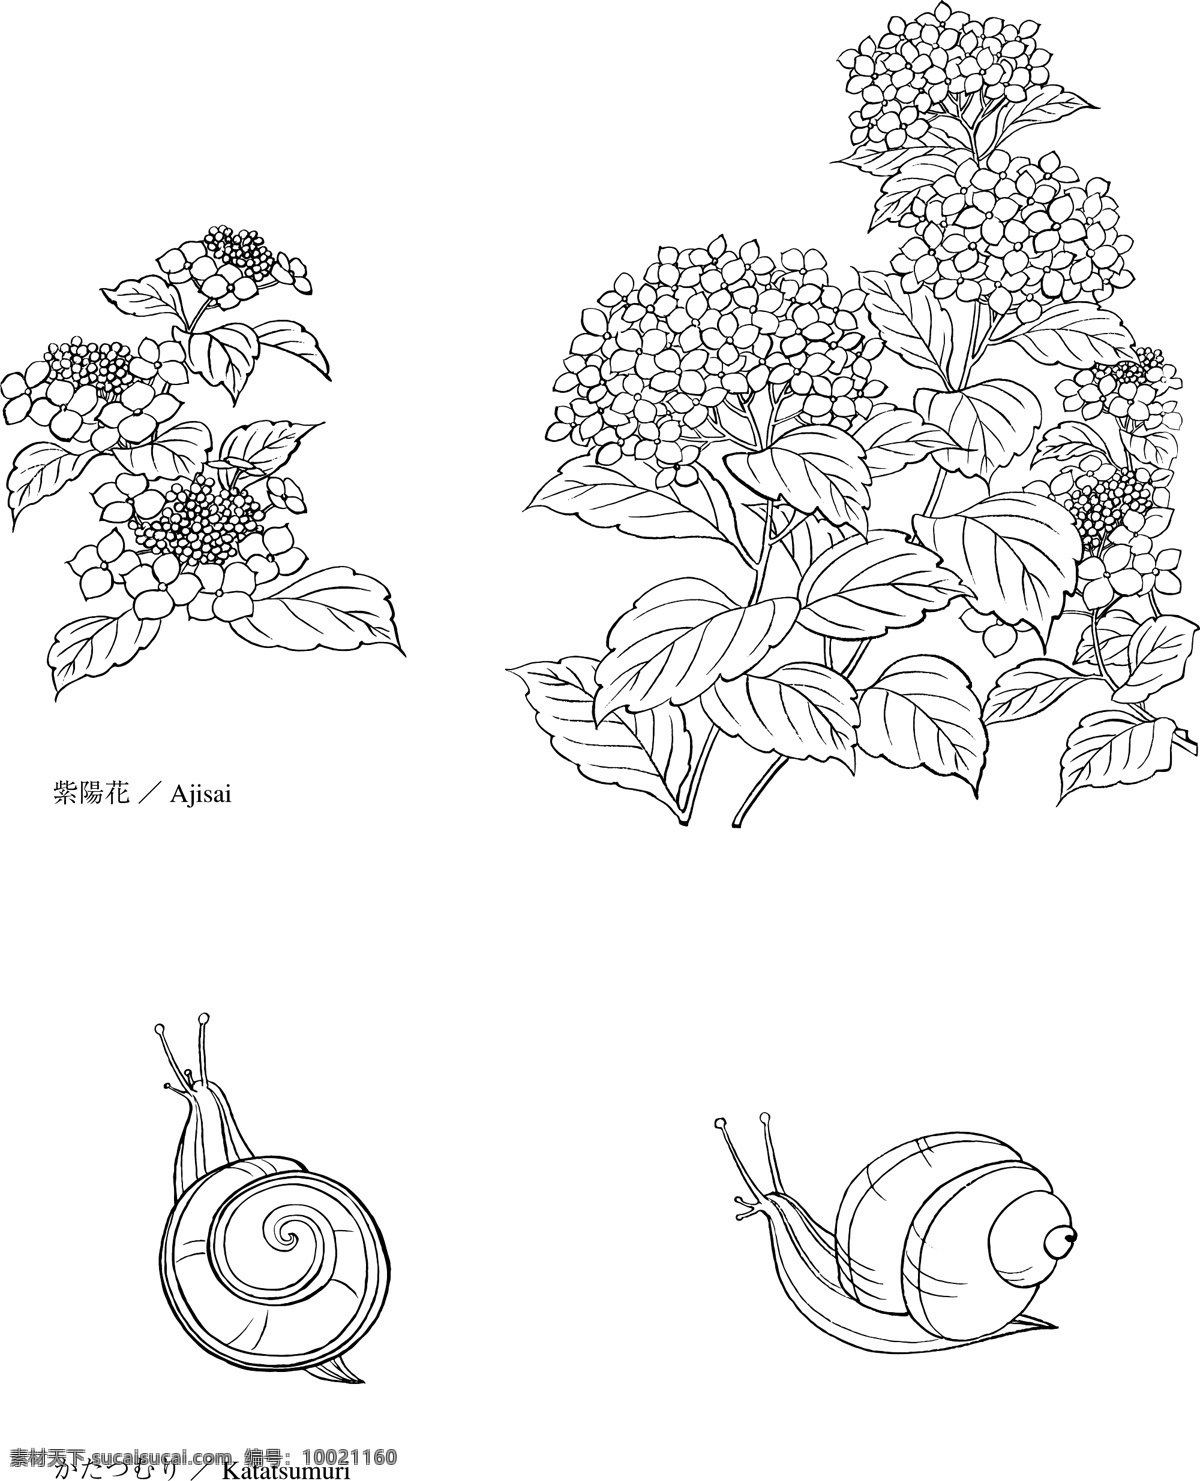 日本 线描 植物 花卉 矢量 紫阳花与蜗牛 勾线 花朵 枝叶 花型 黑白 矢量元素 卡通设计